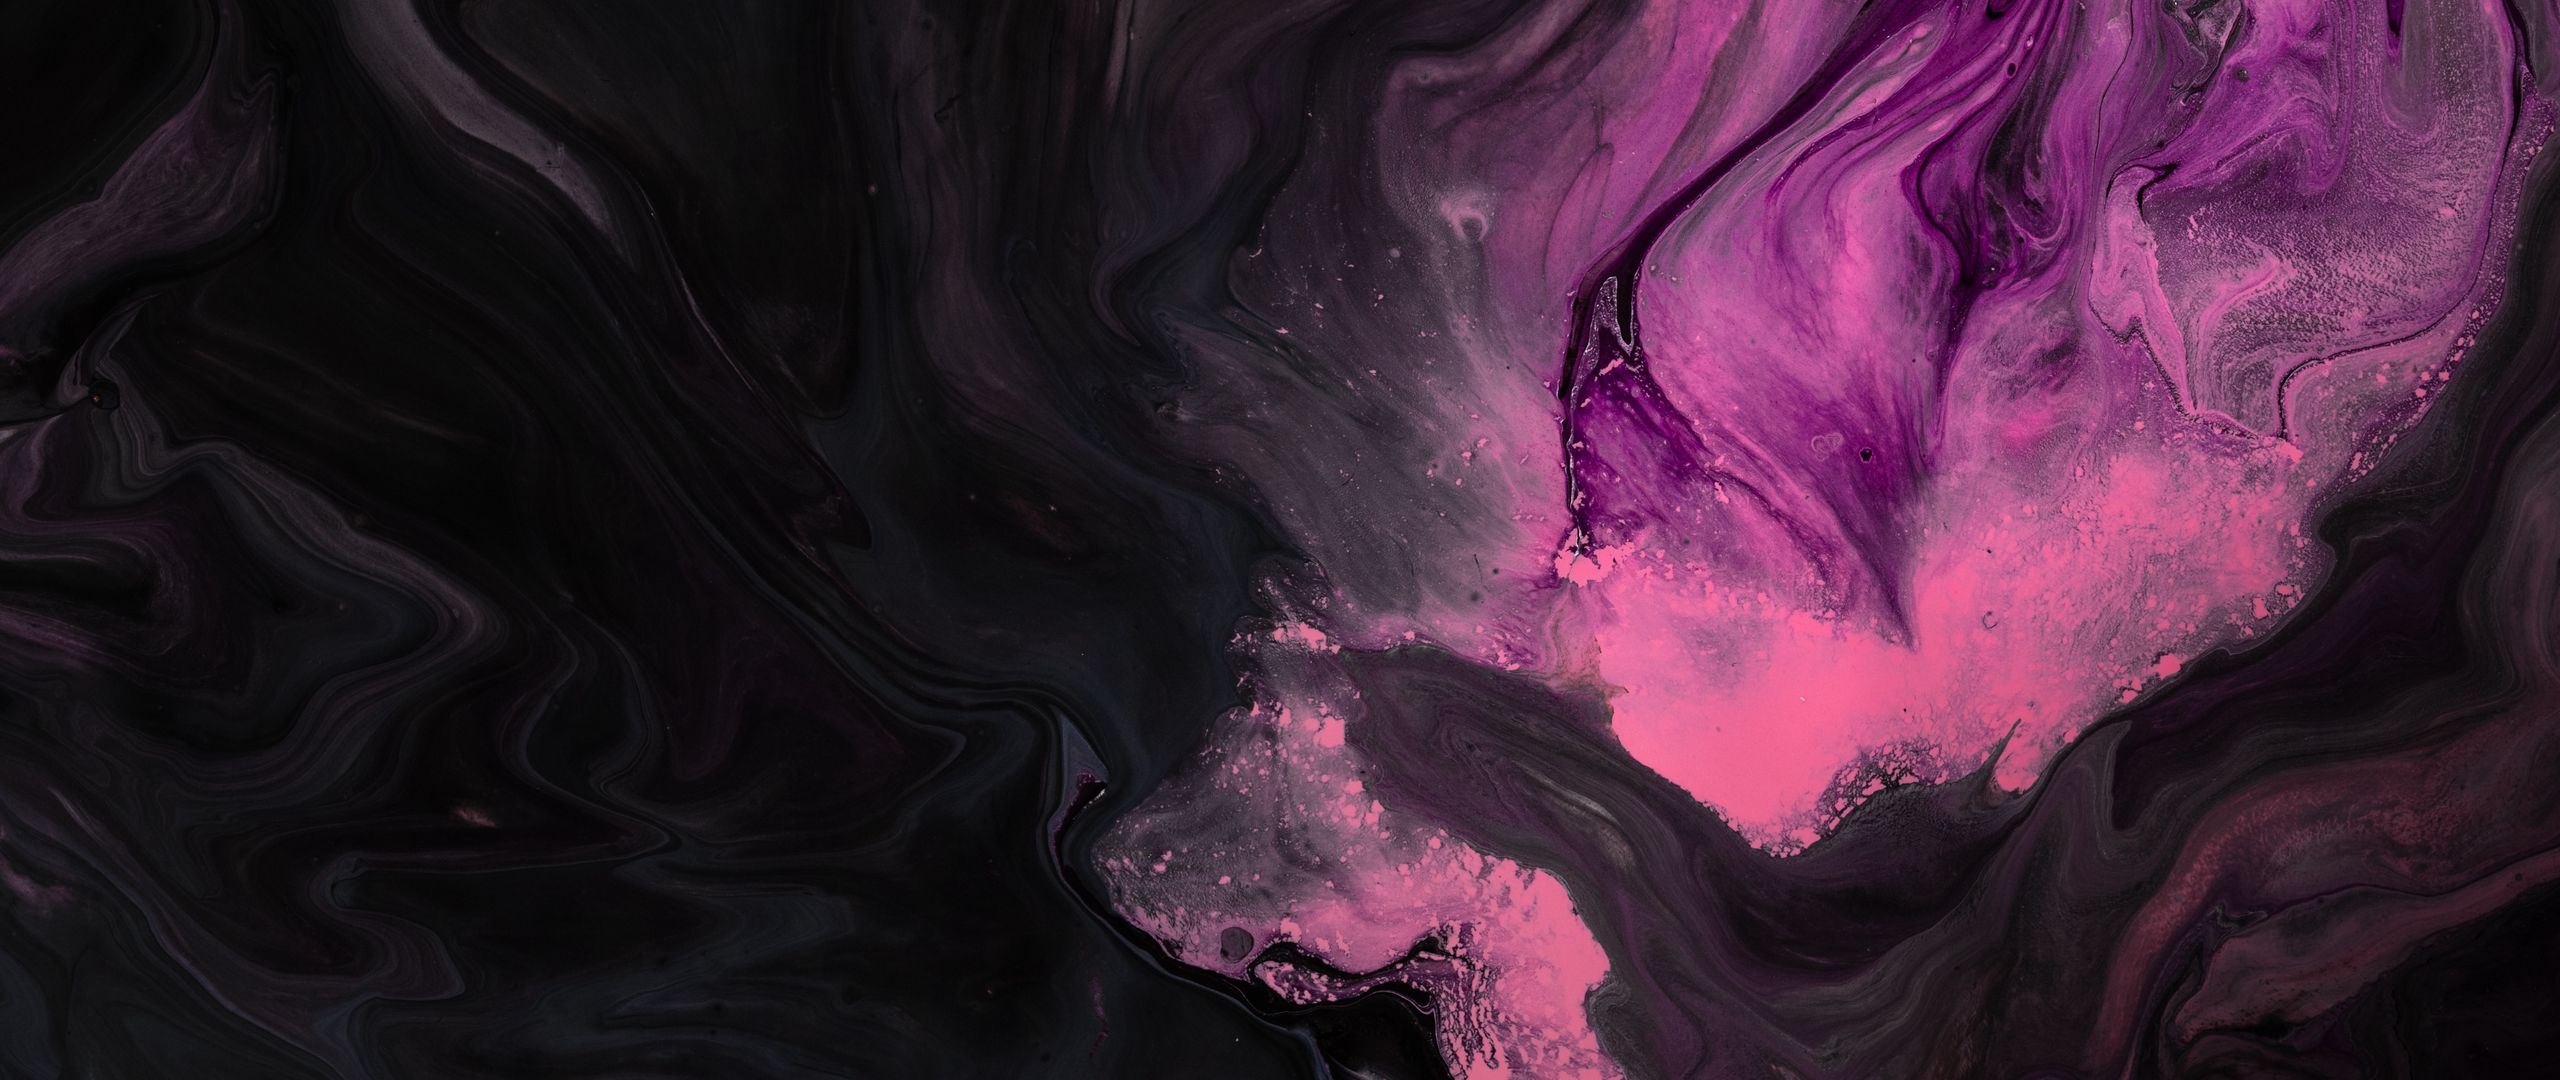 Bộ ảnh với độ phân giải 2560x1080 về Paint, Stains, Pink, Black, Liquid wallpaper được thiết kế đầy tinh tế với gam màu hồng tươi tắn và chất lỏng đầy ma mị. Đây chắc chắn sẽ là bộ ảnh giúp bạn làm mới và trang trí màn hình máy tính theo phong cách hiện đại.